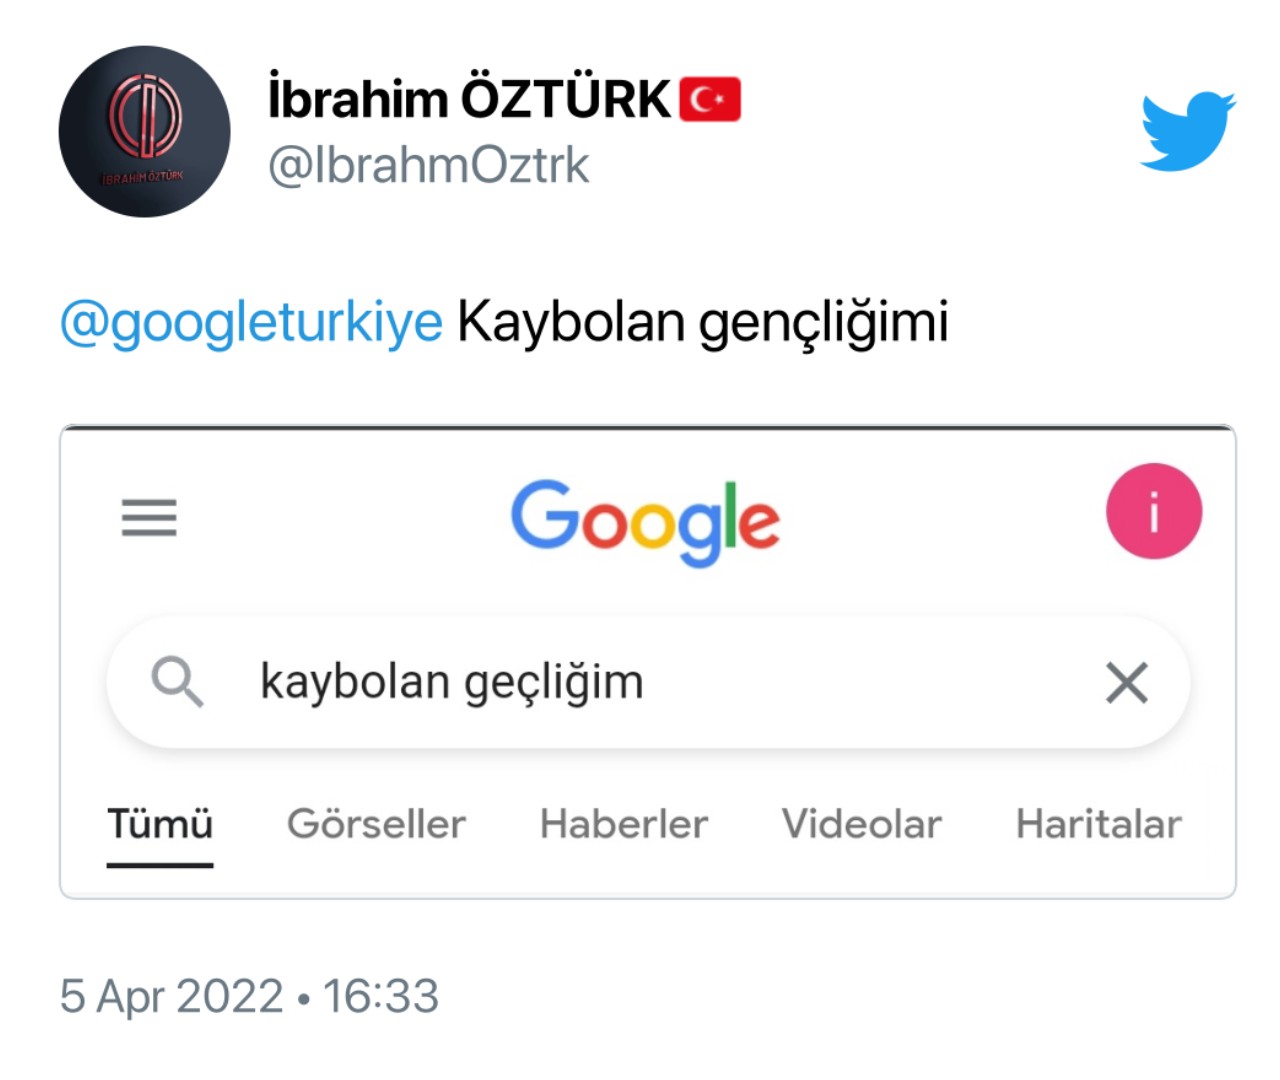 Ulaş Utku Bozdoğan: Google Türkiye Hesabı Twitter'a Katıldı 4